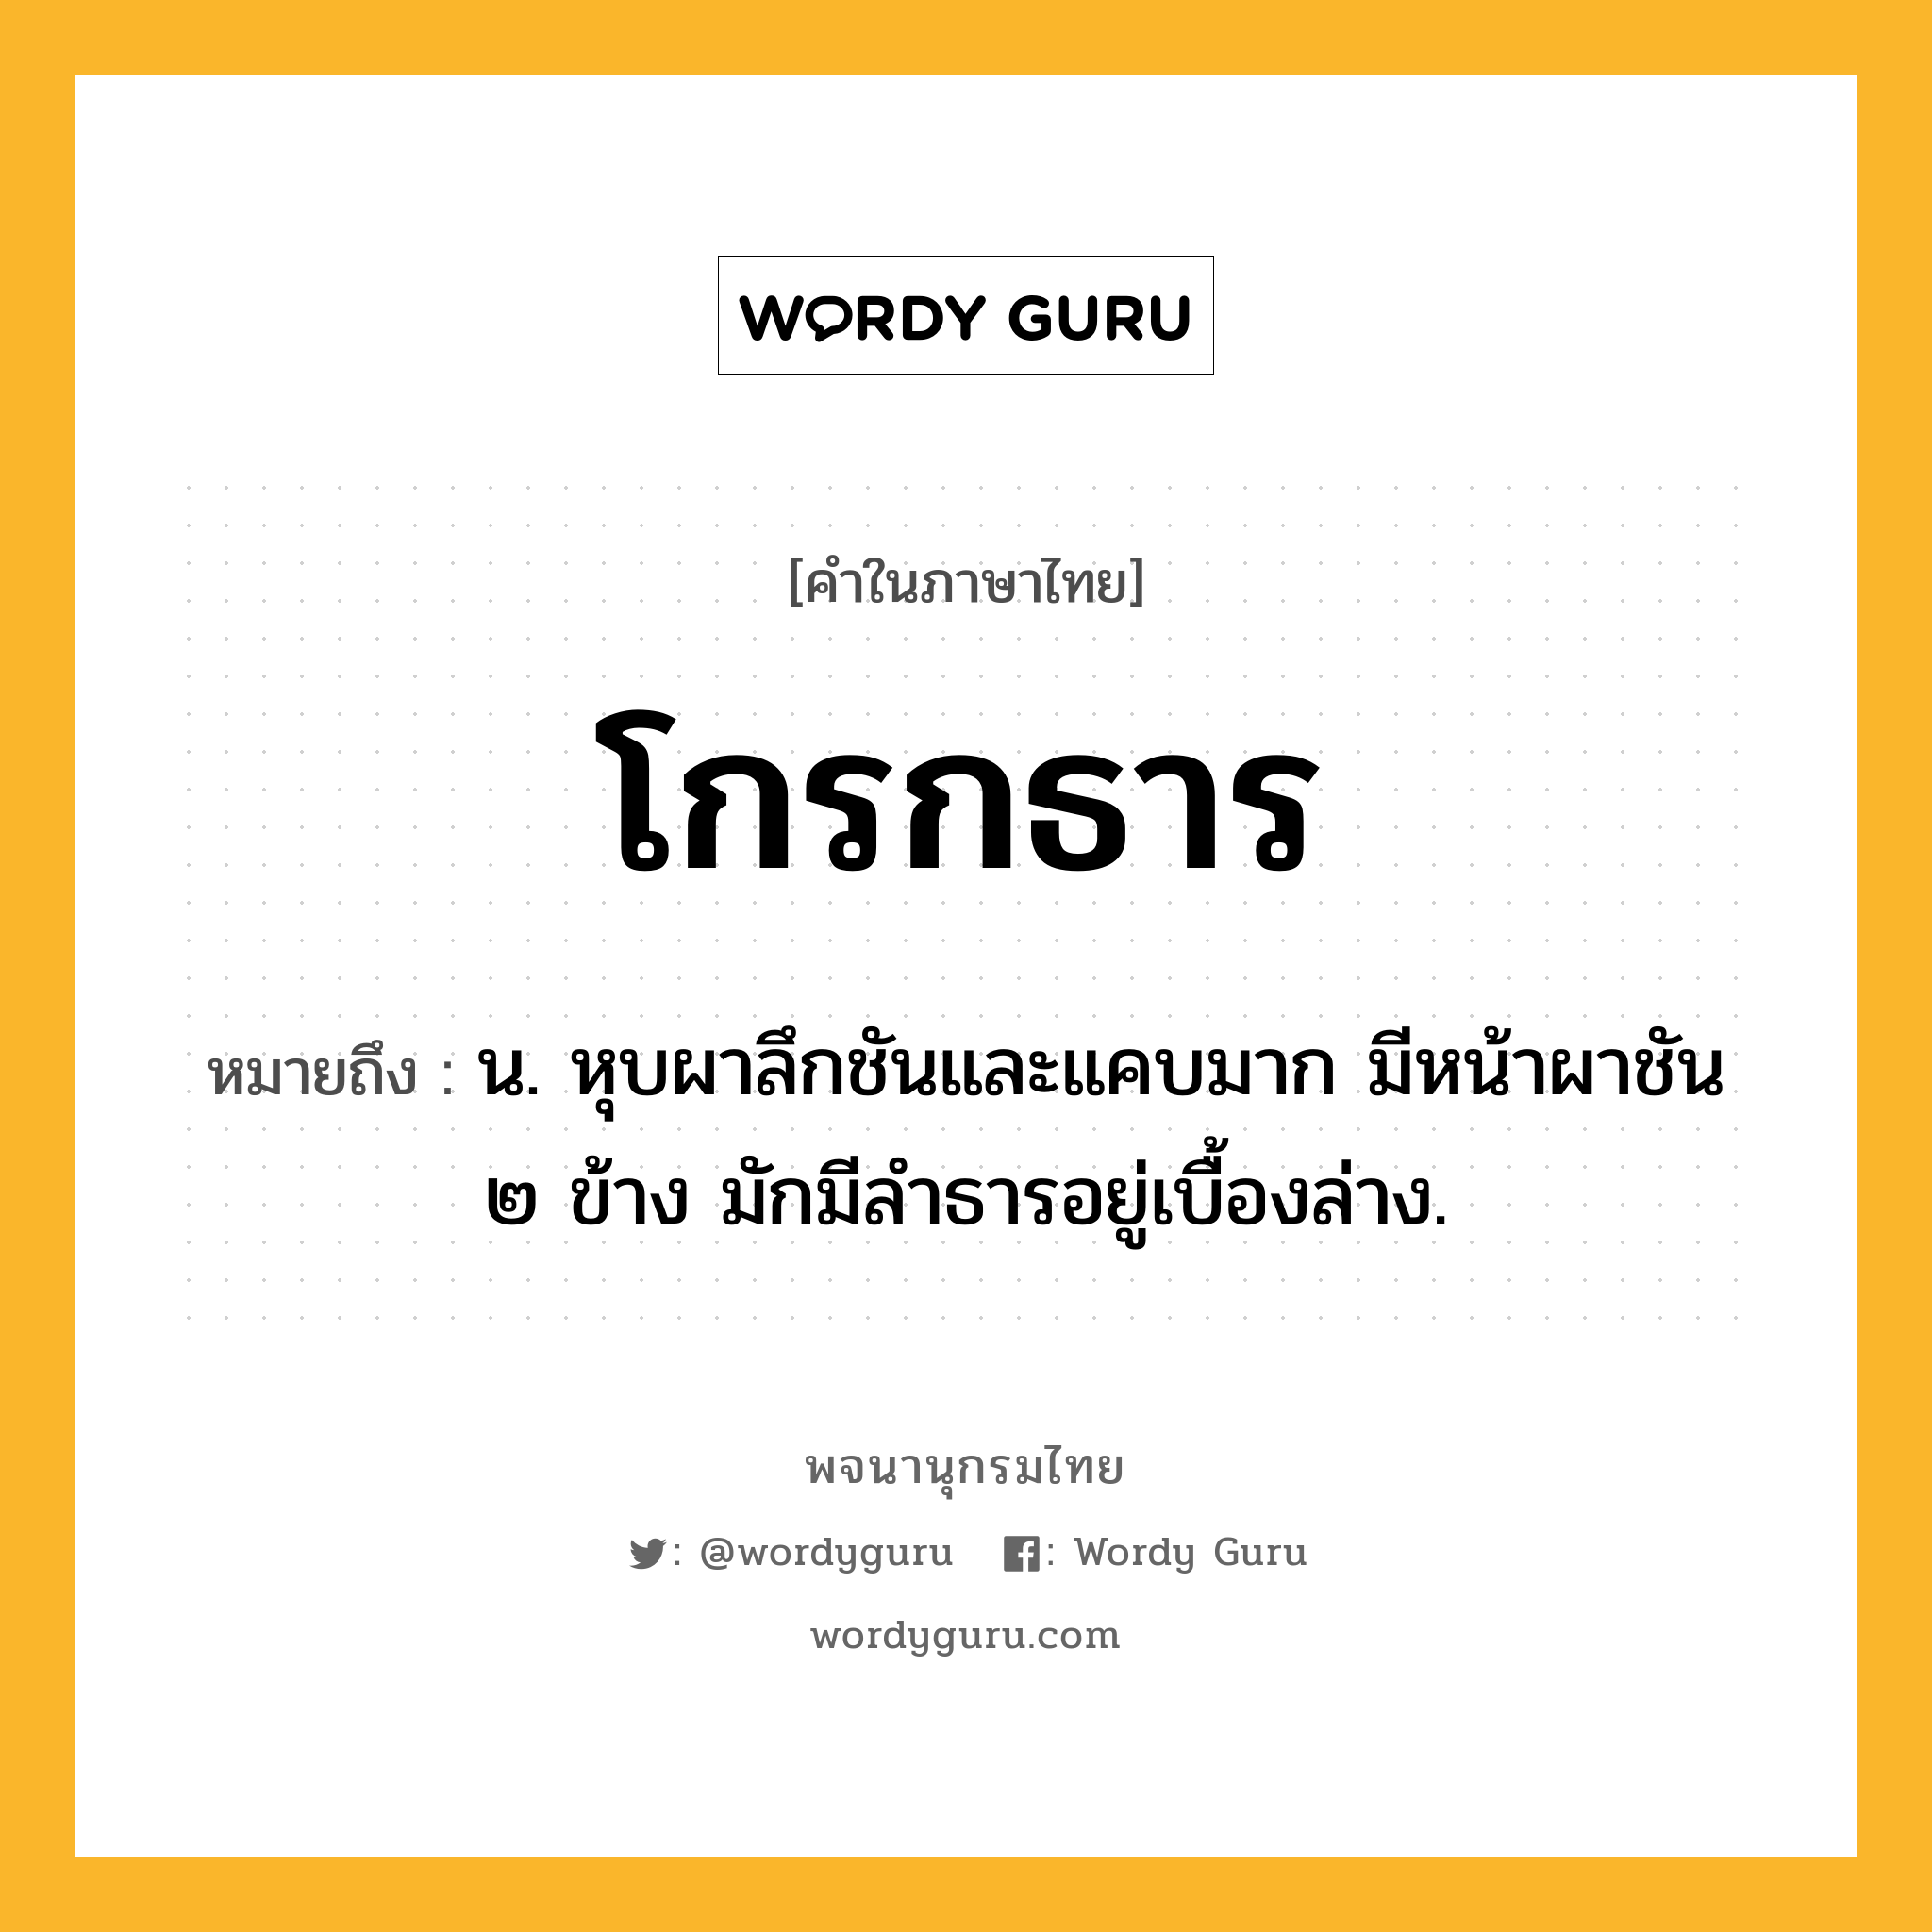 โกรกธาร ความหมาย หมายถึงอะไร?, คำในภาษาไทย โกรกธาร หมายถึง น. หุบผาลึกชันและแคบมาก มีหน้าผาชัน ๒ ข้าง มักมีลําธารอยู่เบื้องล่าง.